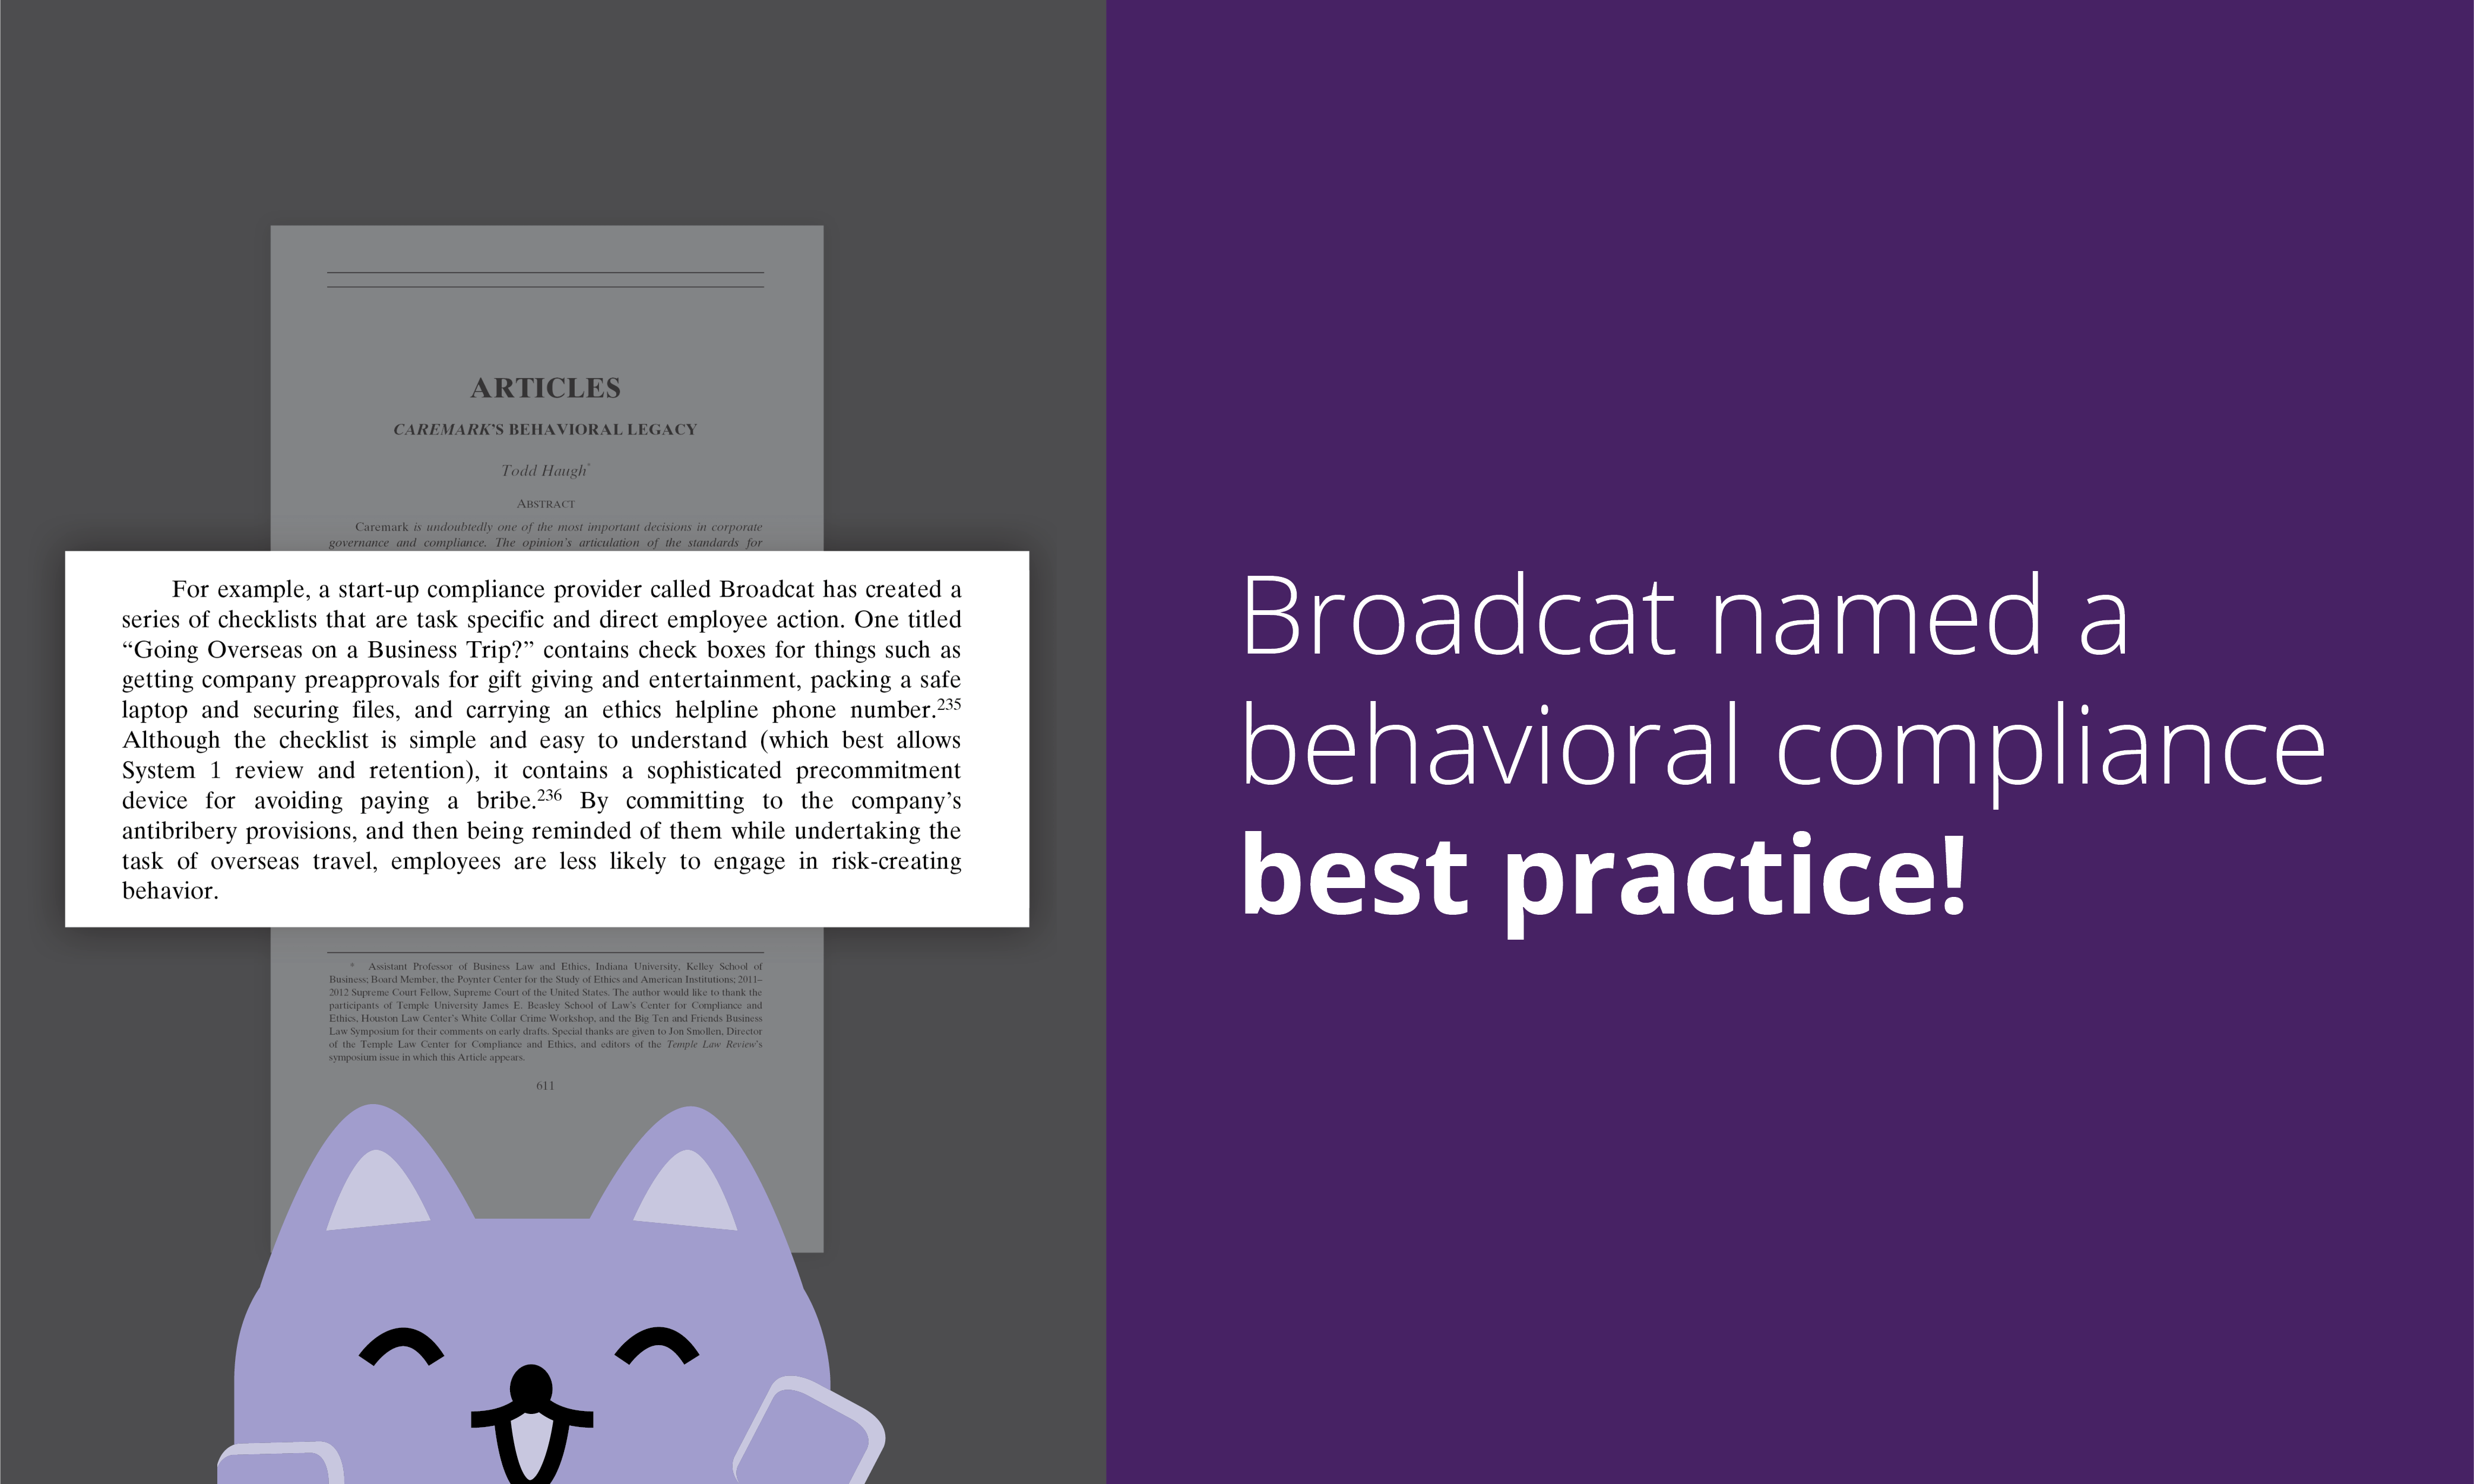 broadcat-behavioral-compliance-best-practice-1